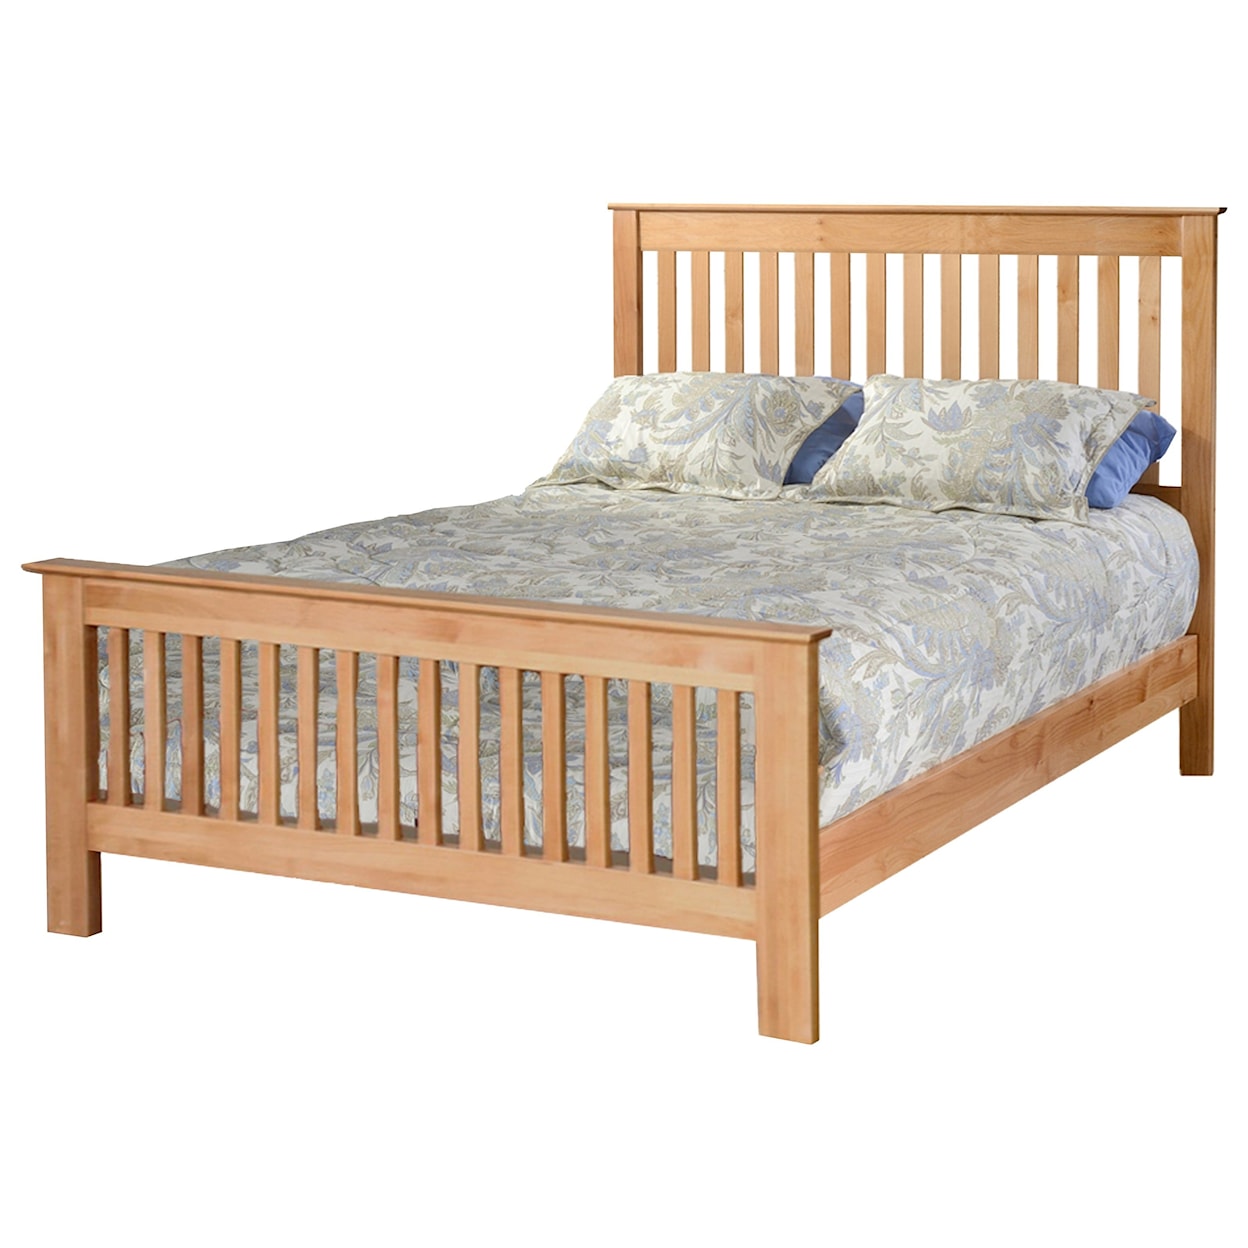 Archbold Furniture Beds King Slat Panel Bed